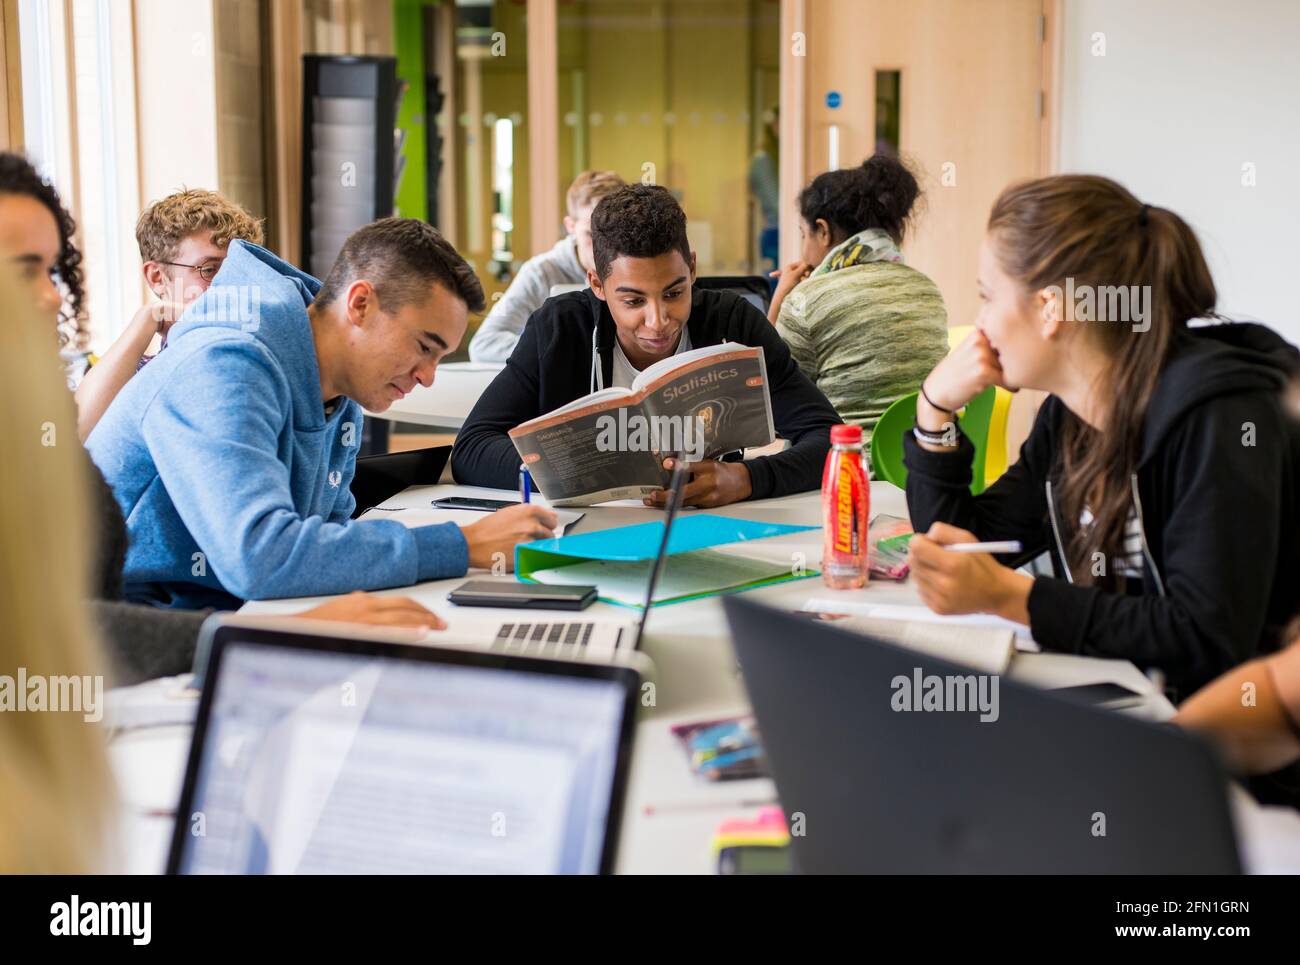 Les élèves multiculturels de la sixième forme, les jeunes dans l'éducation, les adolescents regardant l'ordinateur portable de la sixième forme, les étudiants travaillant à l'ordinateur portable Banque D'Images